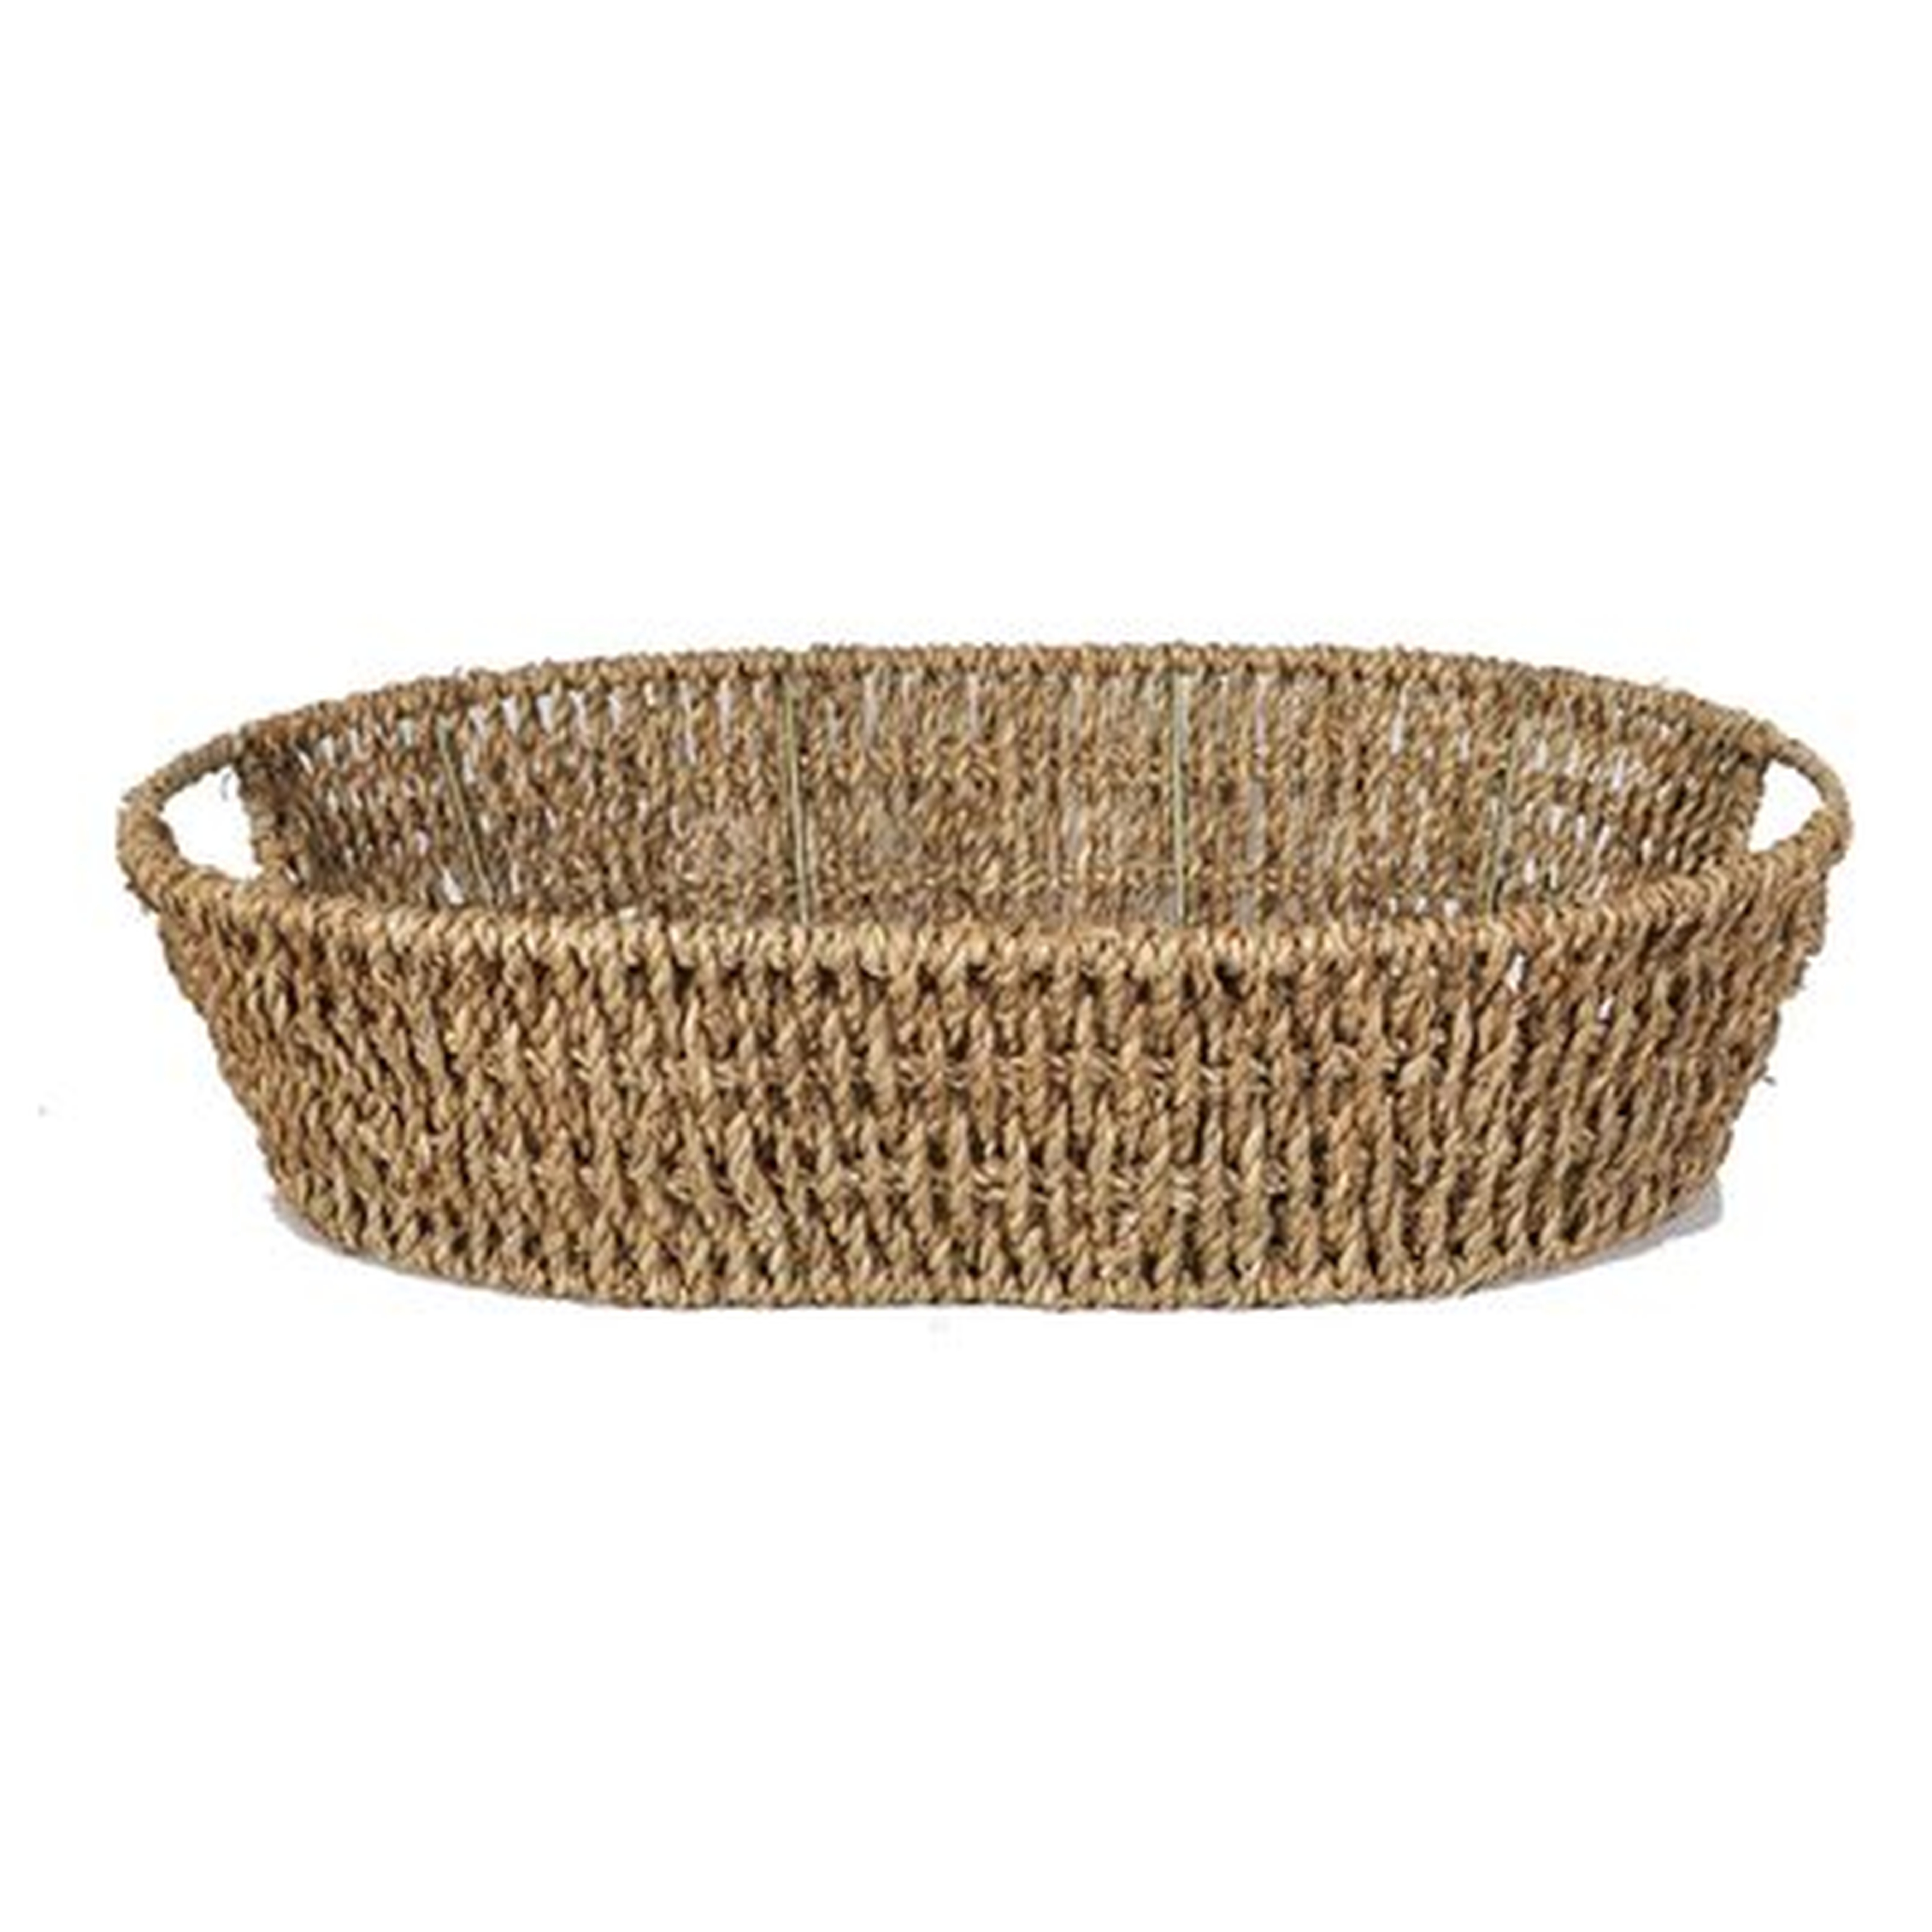 Sea Grass Tray Wicker Basket - Wayfair